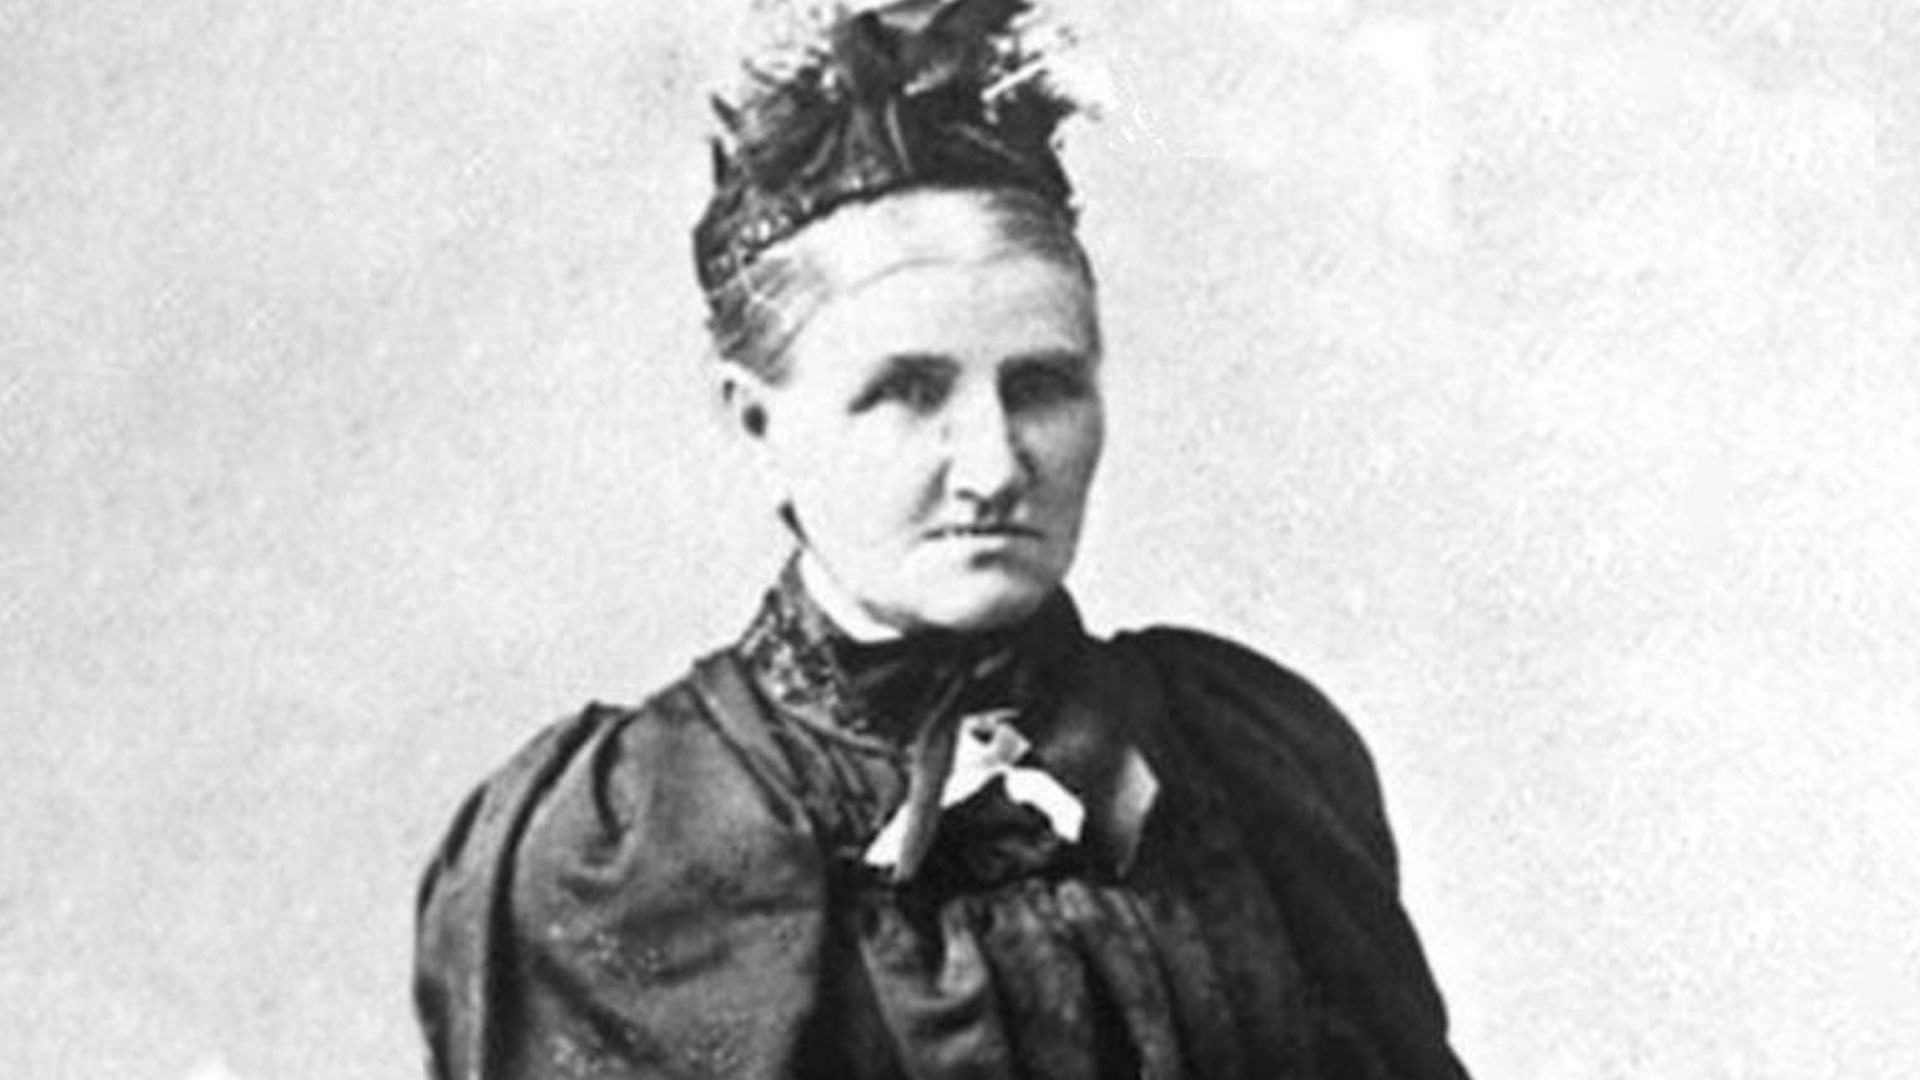 Suffragist Elizabeth Caradus